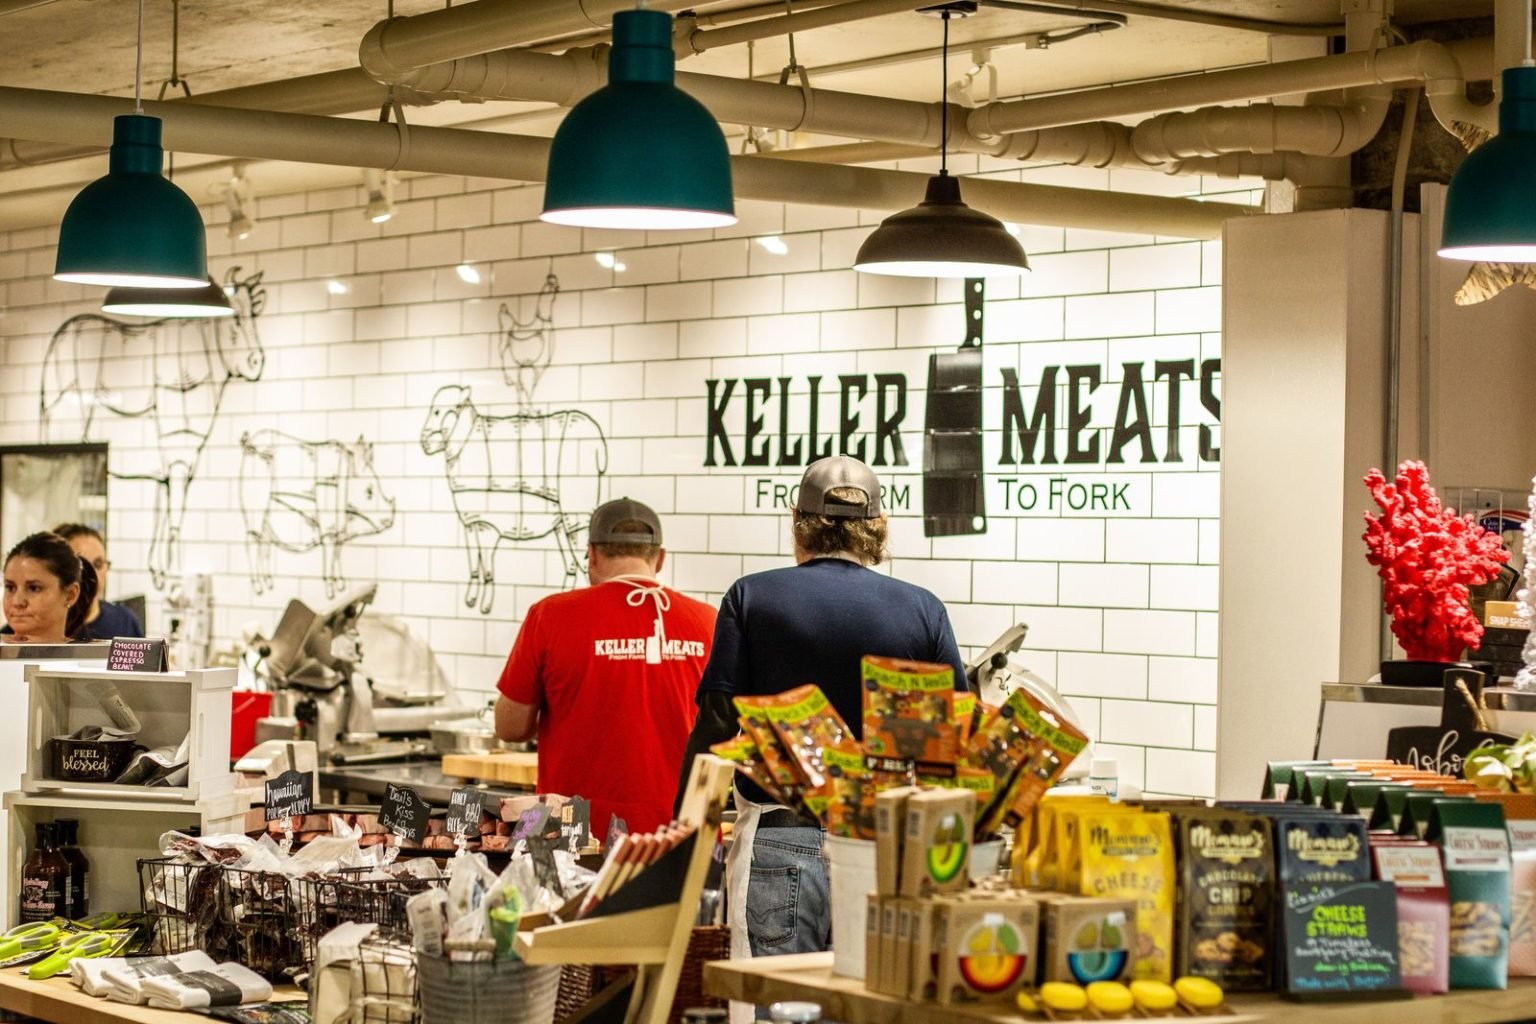 Keller-Meat-Shop-12-1536x1024.jpg